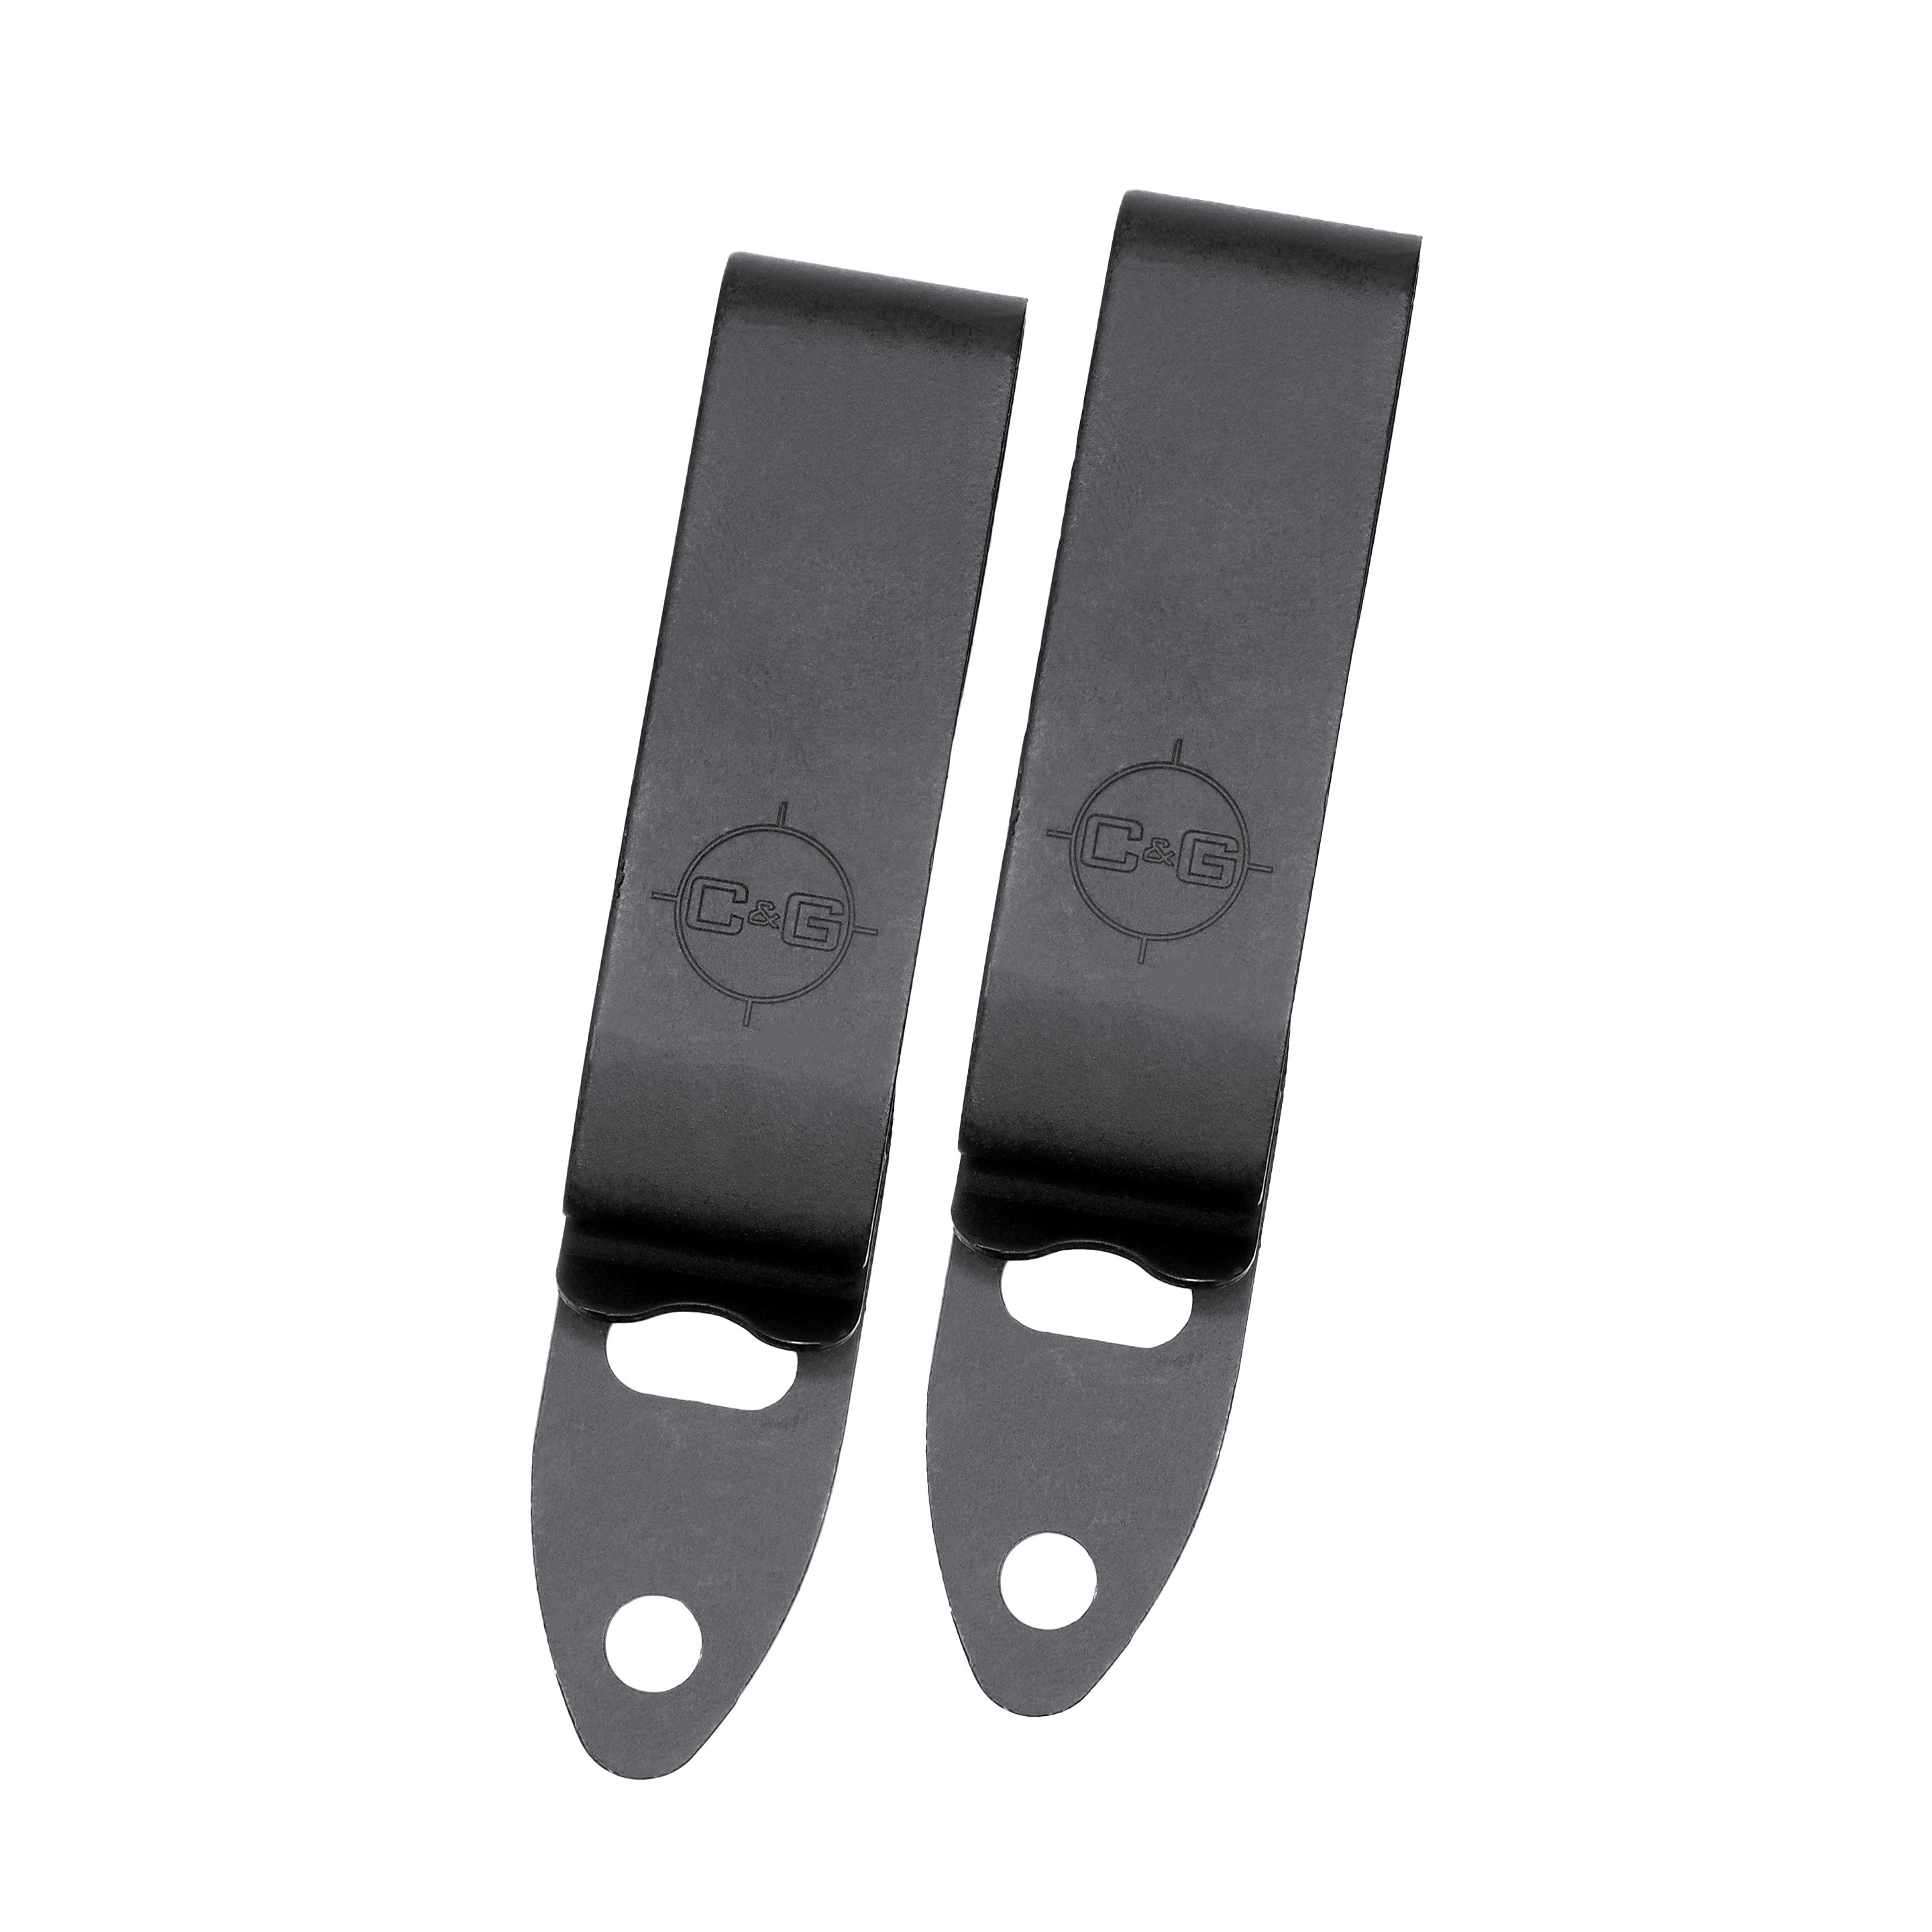  Inc. > Metal Belt Clips > Spring steel metal belt holster clip.